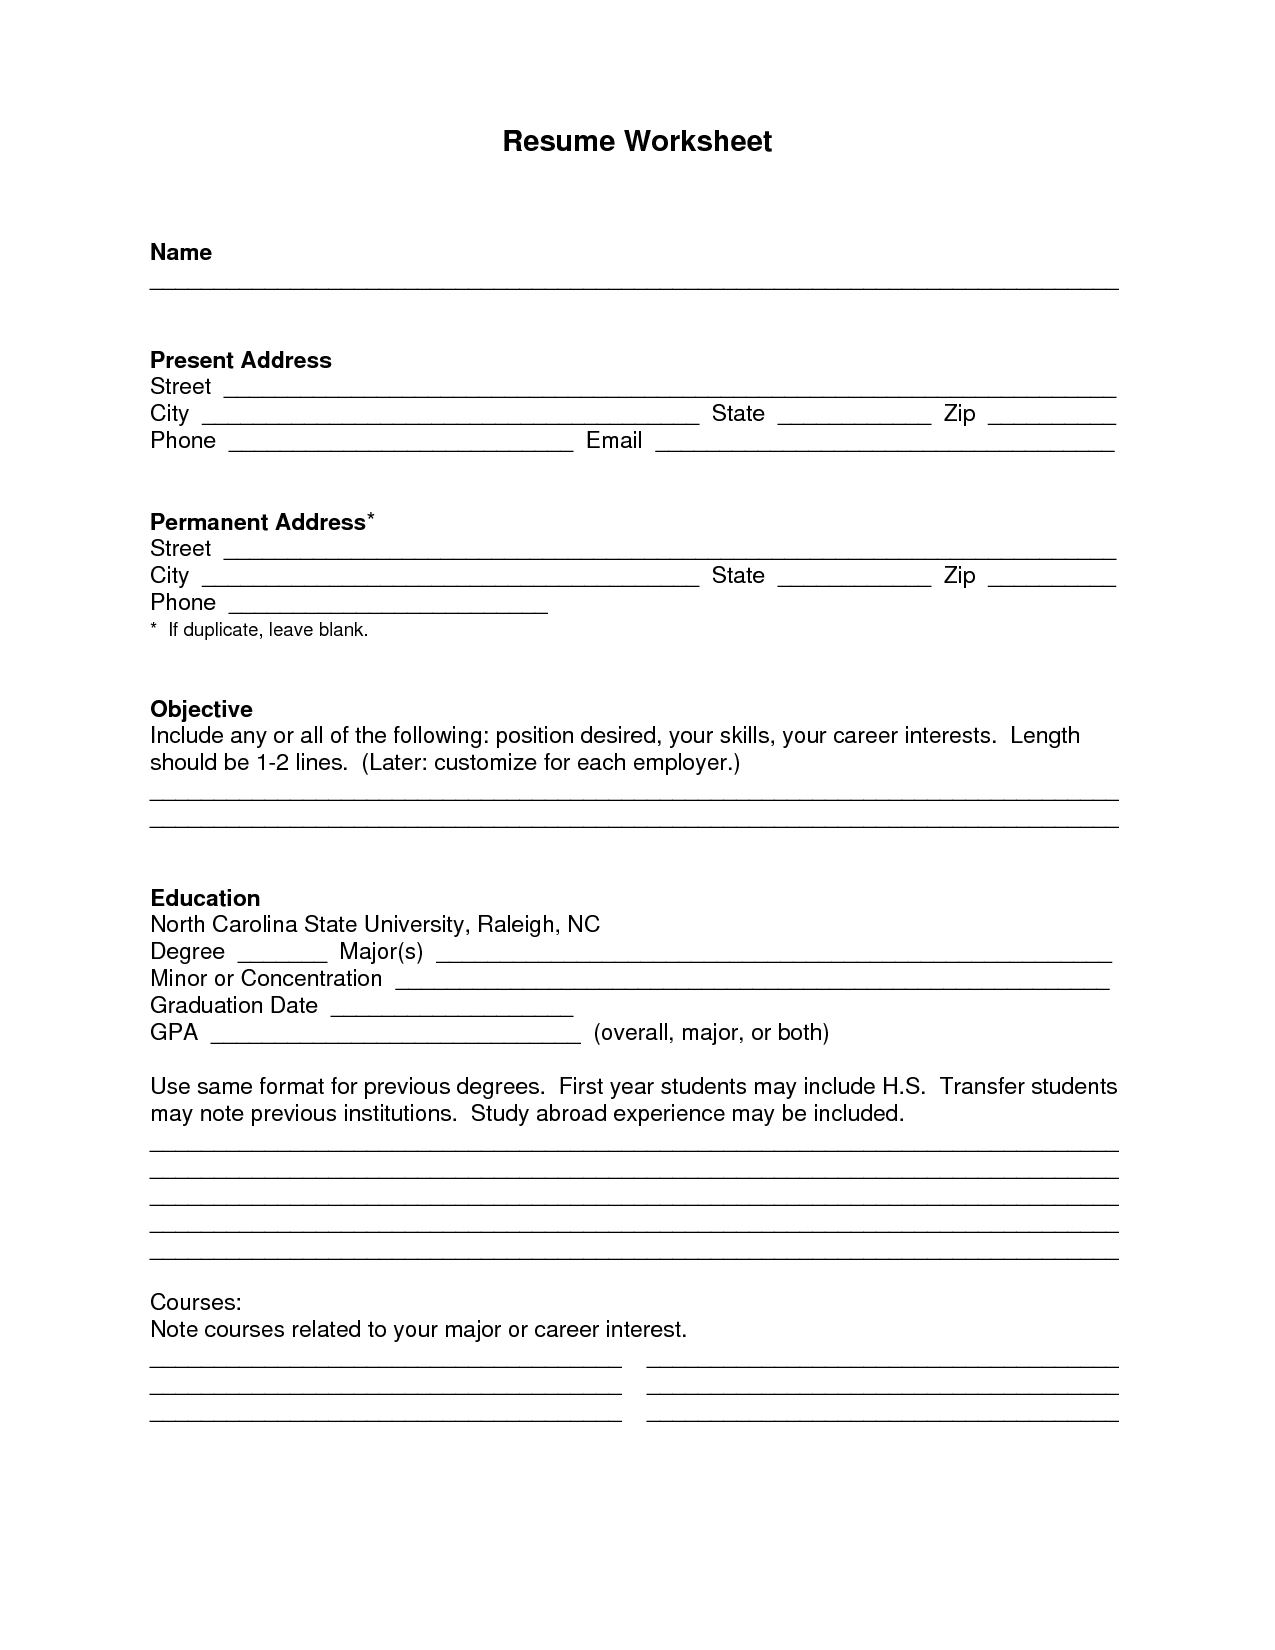 Blank Resume Template Pdf | Blank Resume Templatemmmmmmmmmmmm - Free Printable Resume Templates Download